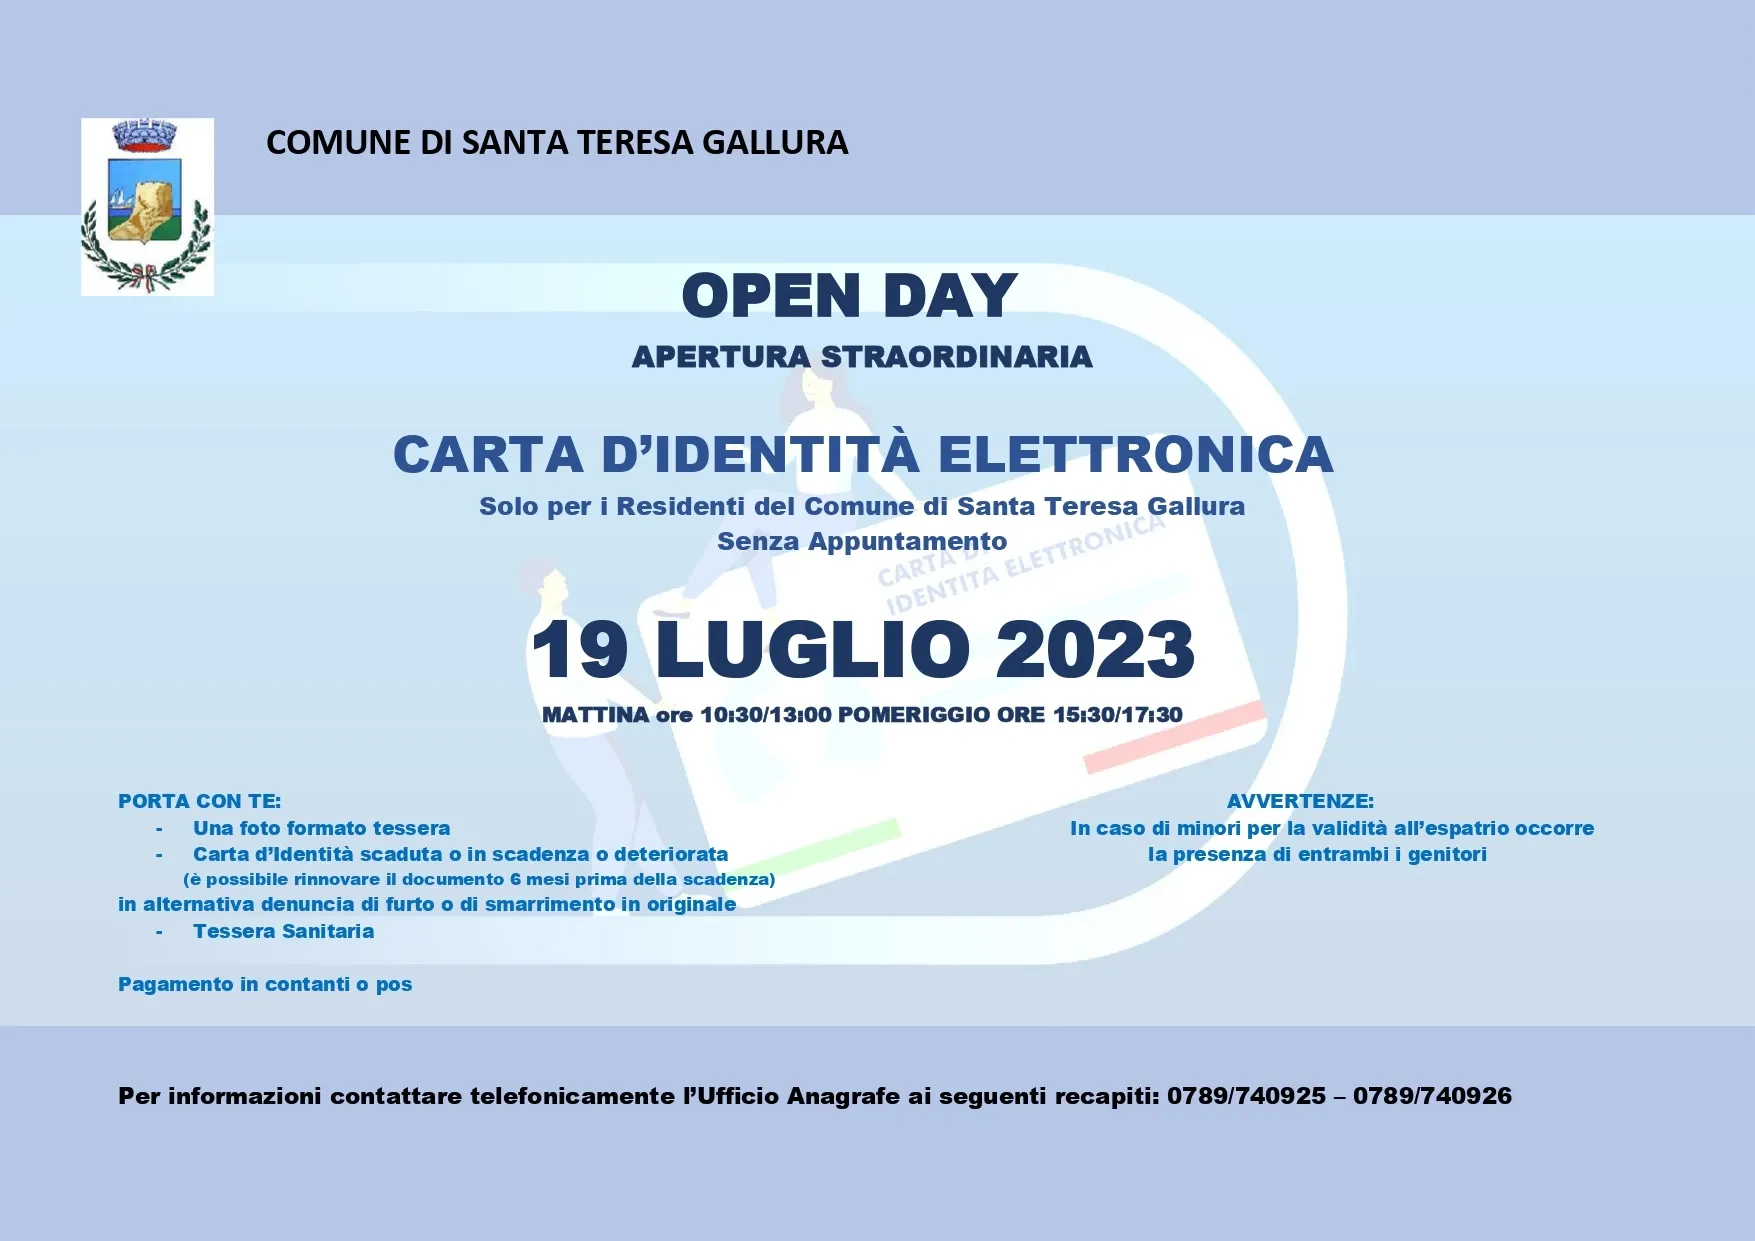 Ufficio Anagrafe - Open Day Carta d'identità elettronica